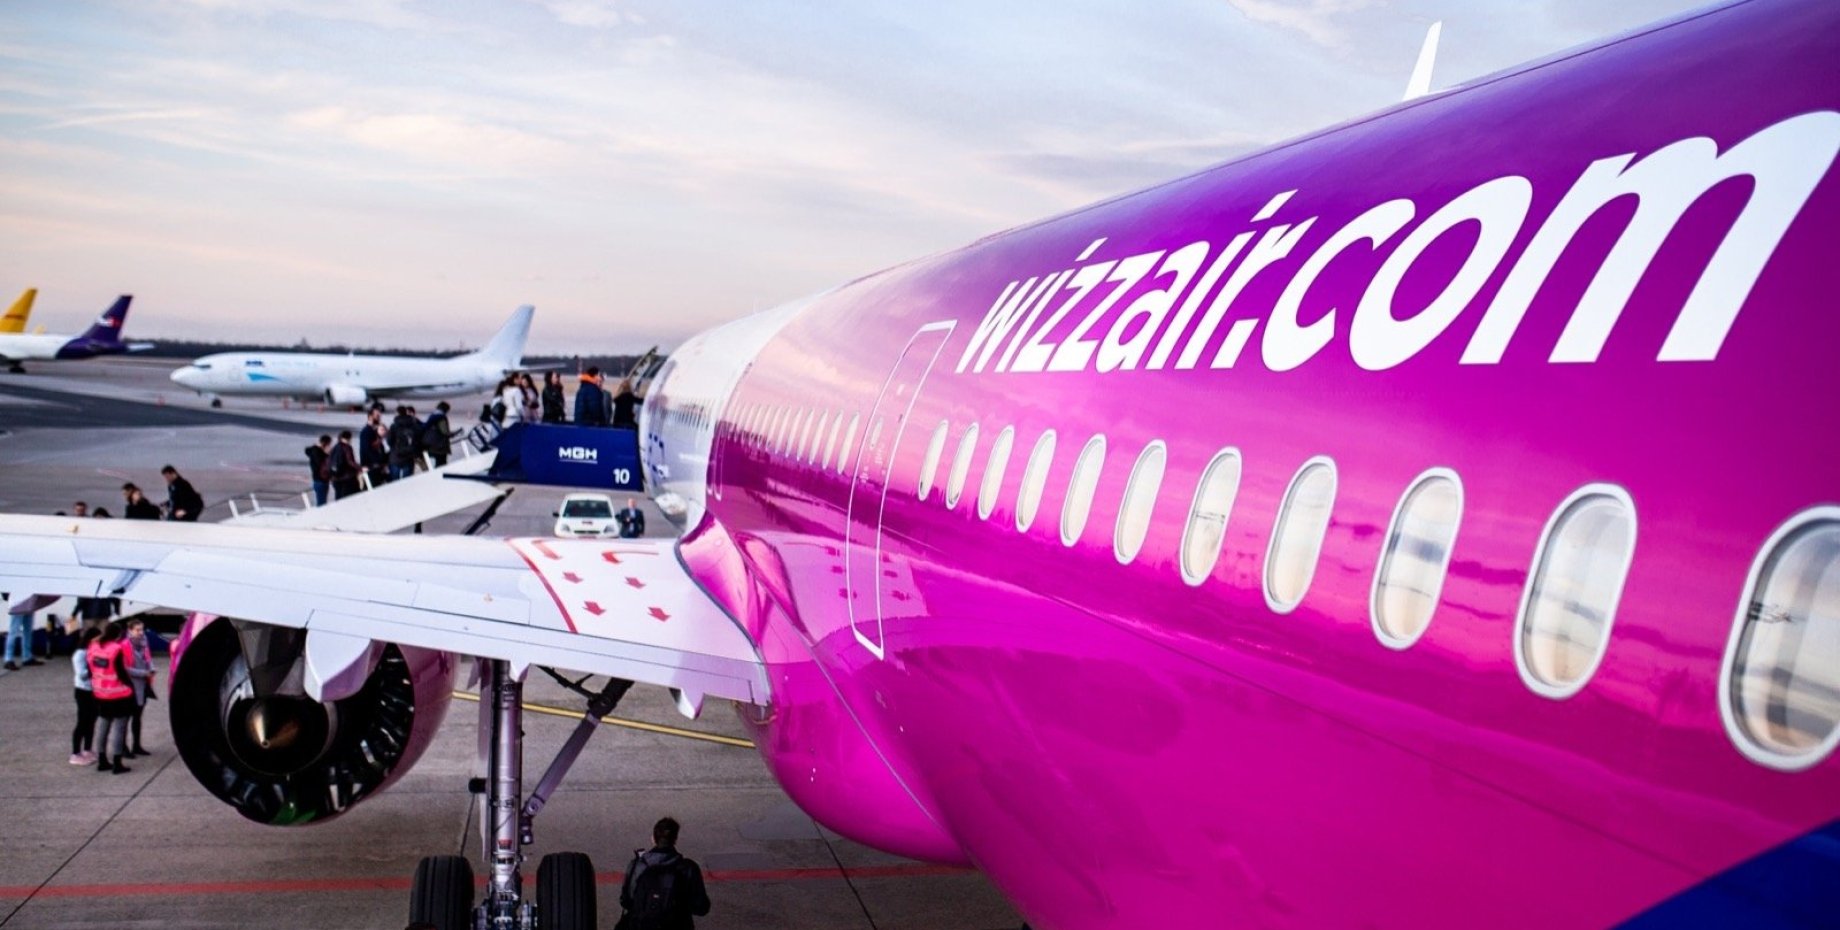 Wizz air авиакомпания сайт. Wizz Air авиакомпания самолет. Венгерская авиакомпания Wizzair. Wizz Air Абу Даби. Wizz Air самолеты компании.